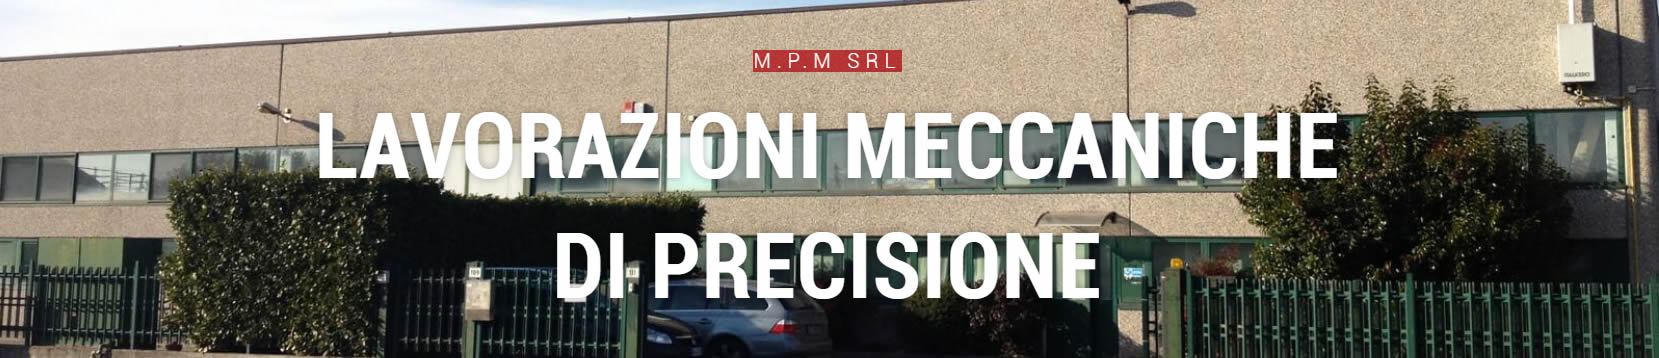 Officina meccanica di precisione Gavirate MPM srl